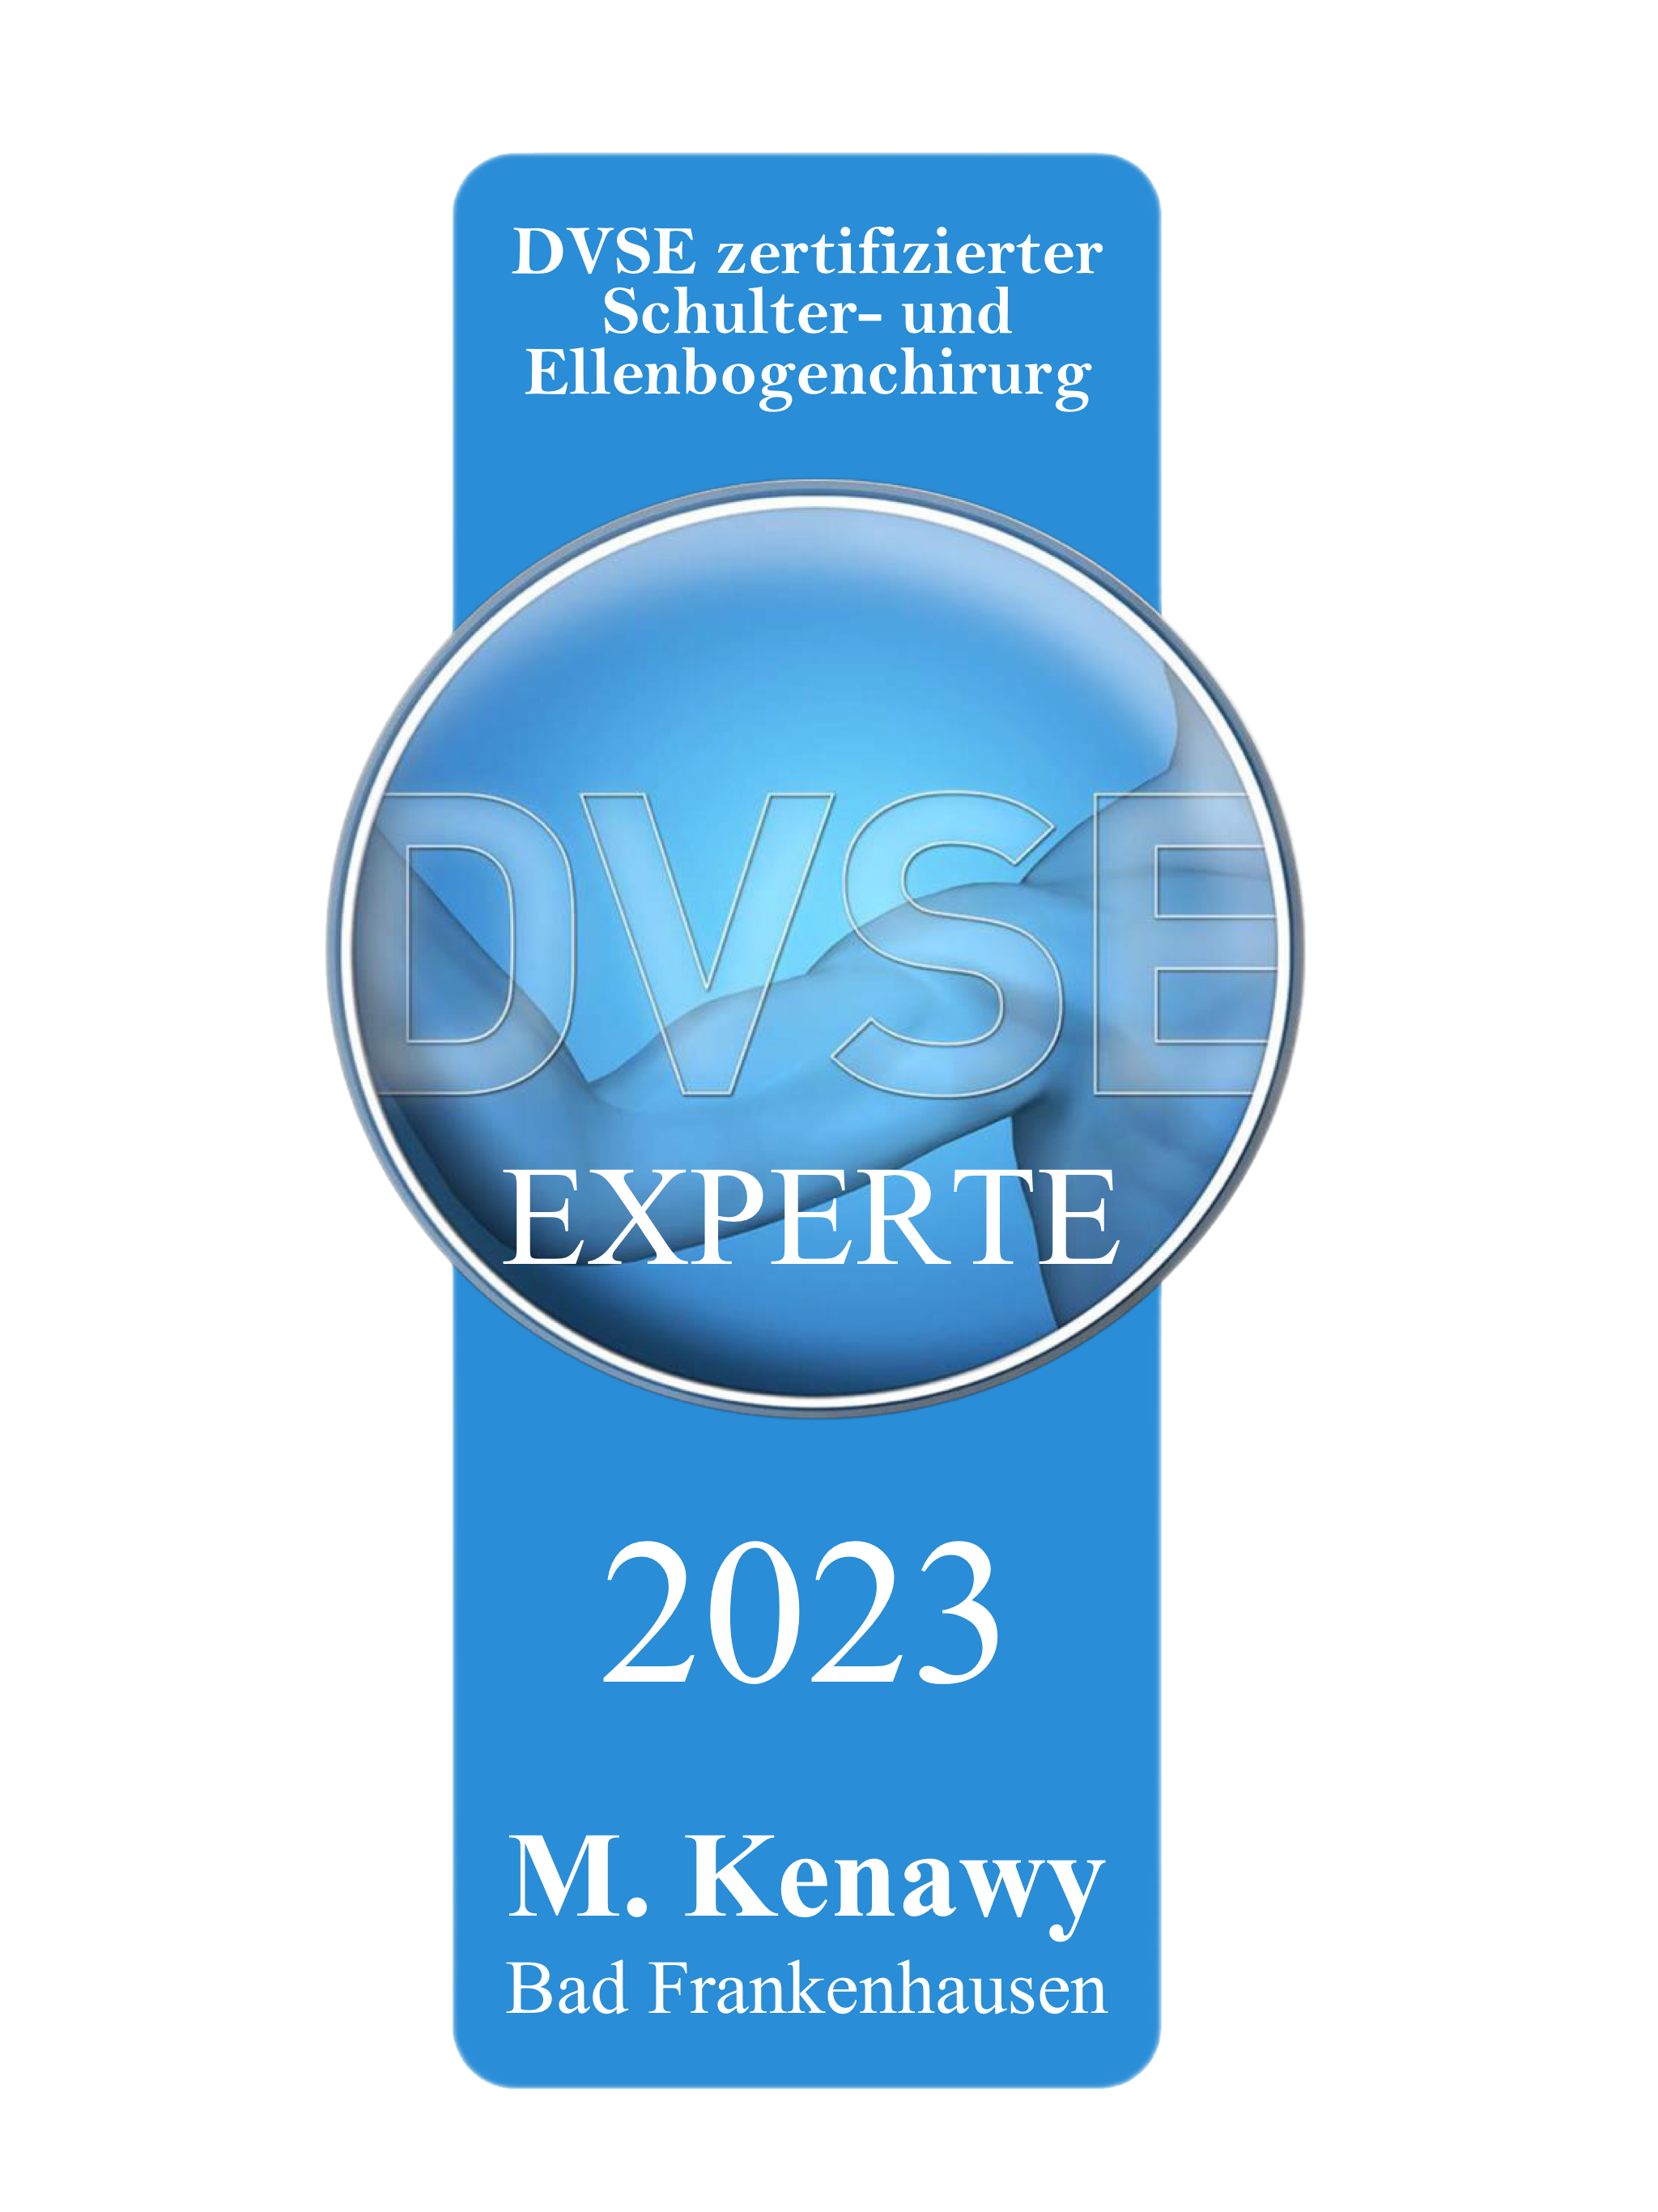 M. Kenawy M.B., B. Ch. wurde mit dem DVSE-Expertenzertifikat für Schulterchirurgie ausgezeichnet